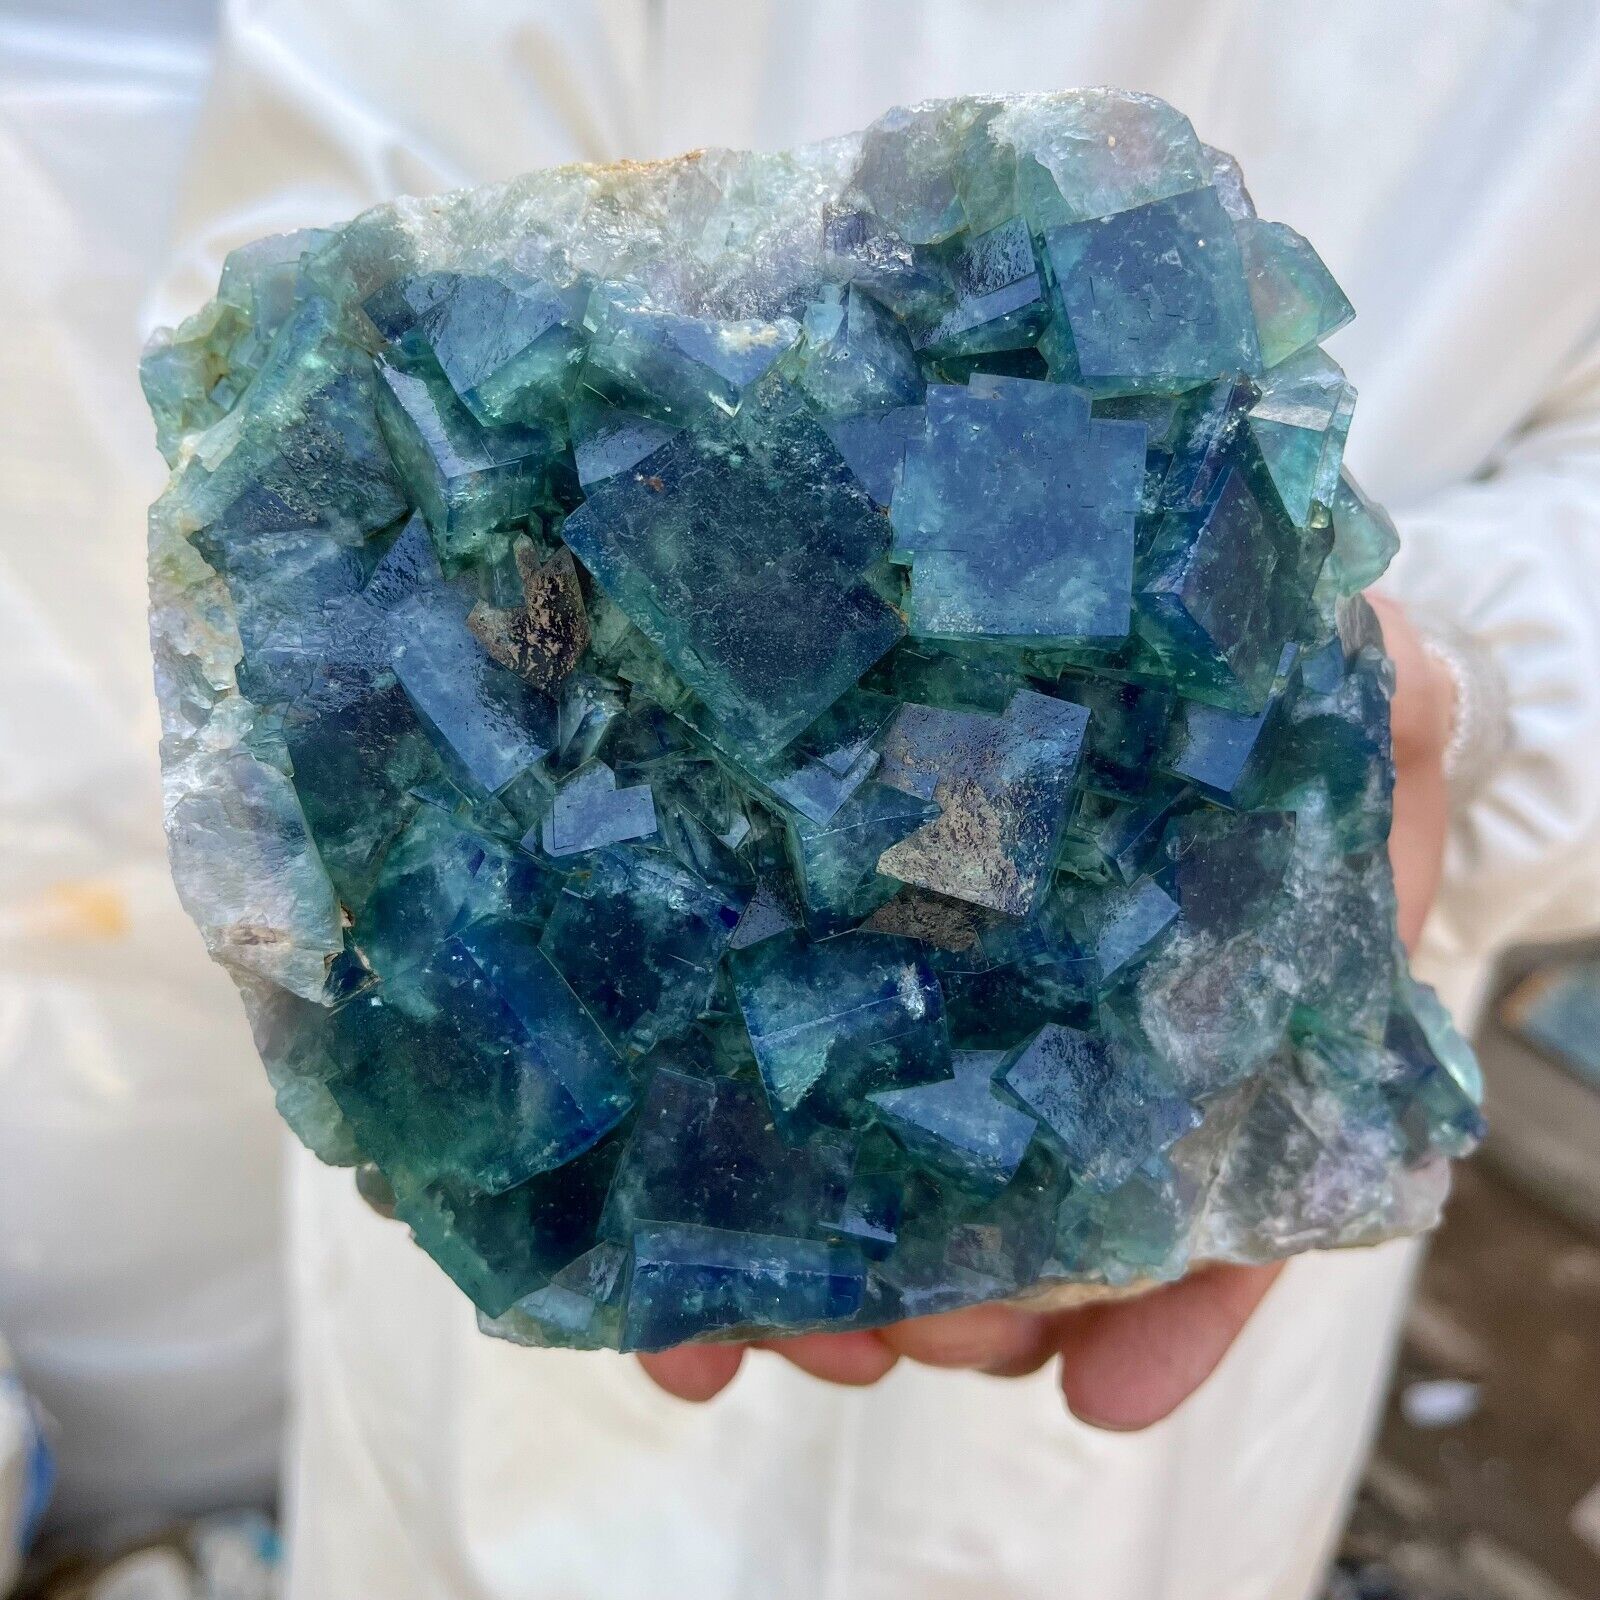 5.4lb Large NATURAL Green Cube FLUORITE Quartz Crystal Cluster Mineral Specimen